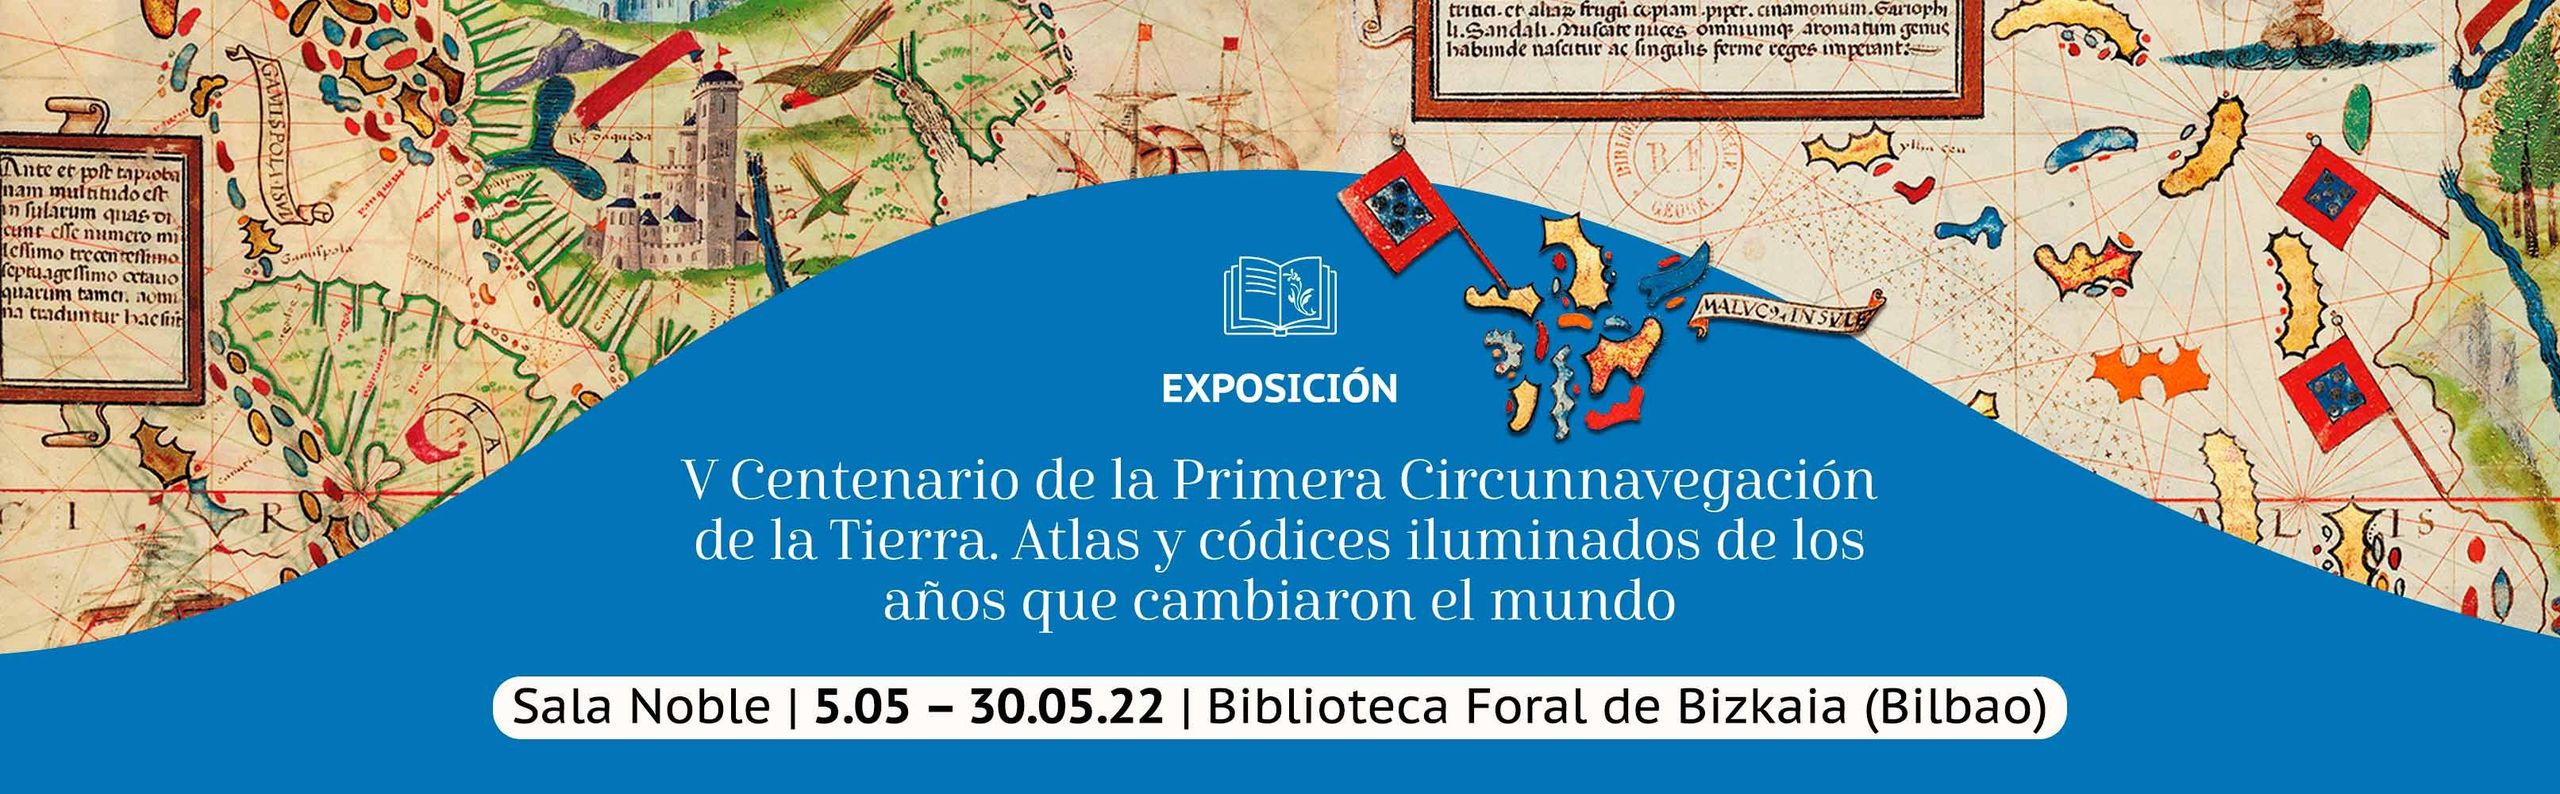 EXPOSICIÓN BIBLIOTECA FORAL DE BIZKAIA header 1